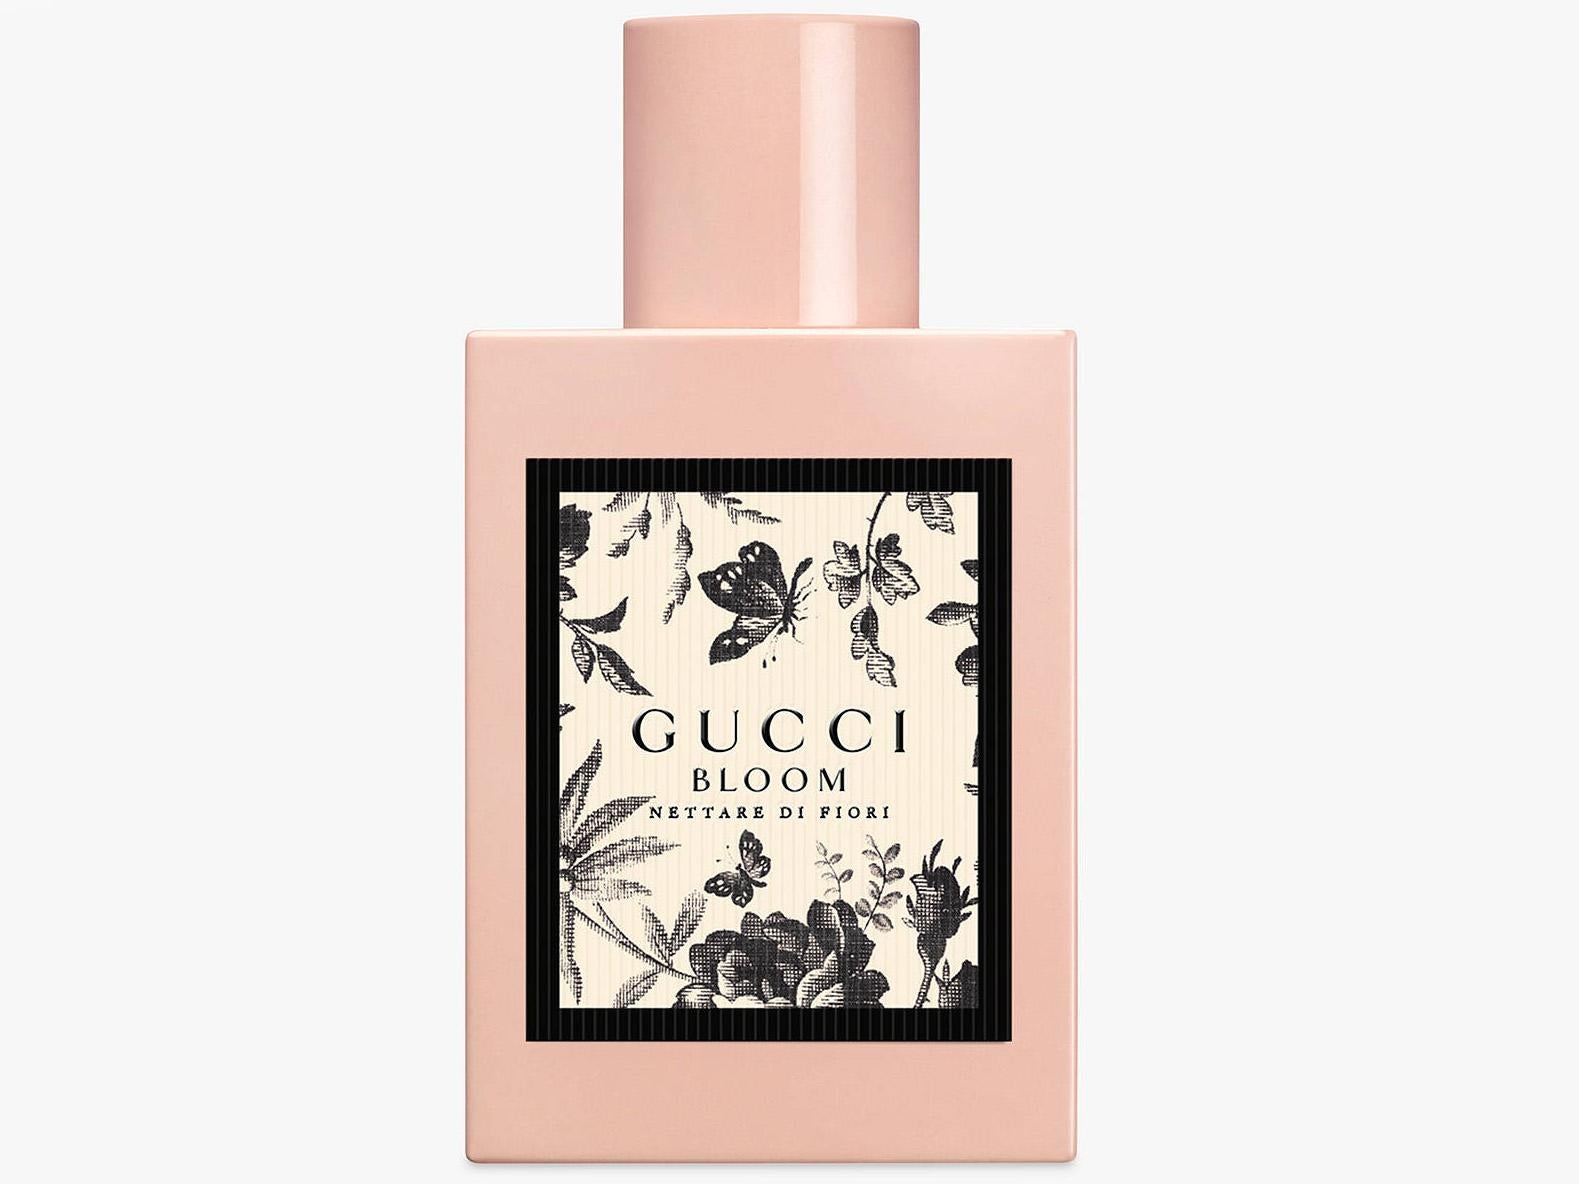 Gucci, Bloom Nettare Di Fiori, £72.90, John Lewis